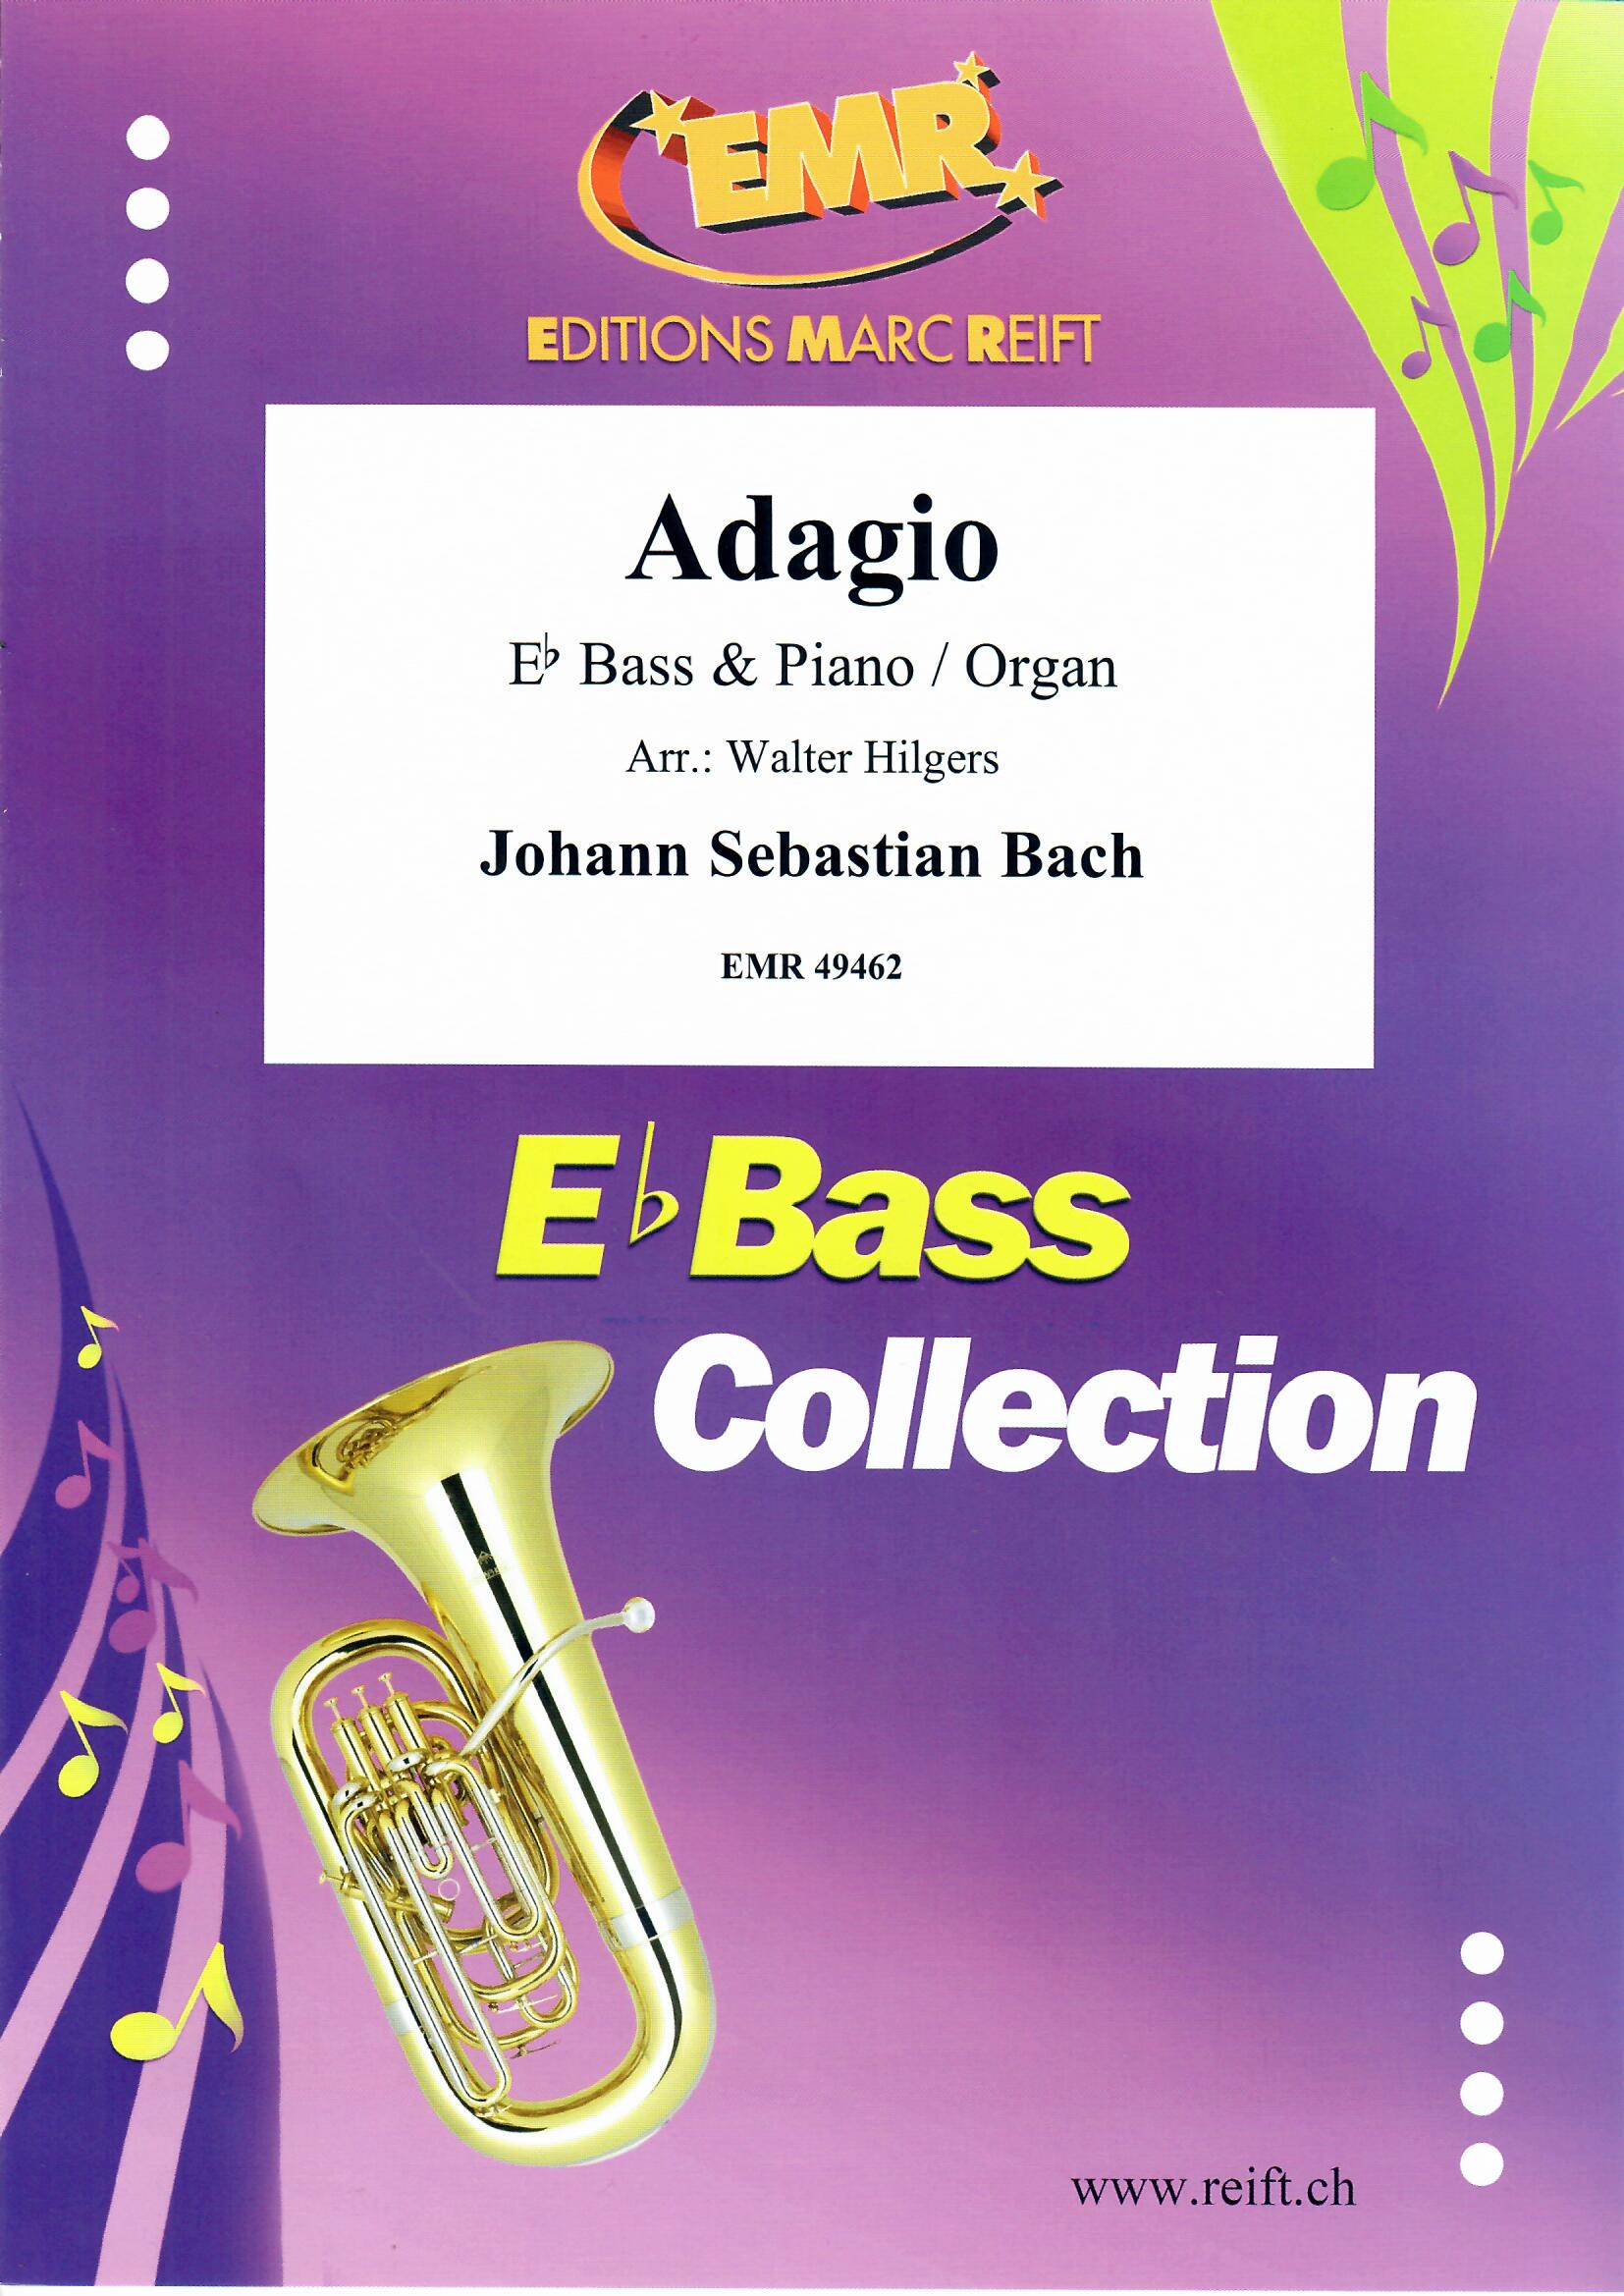 ADAGIO - Eb. Bass & Piano